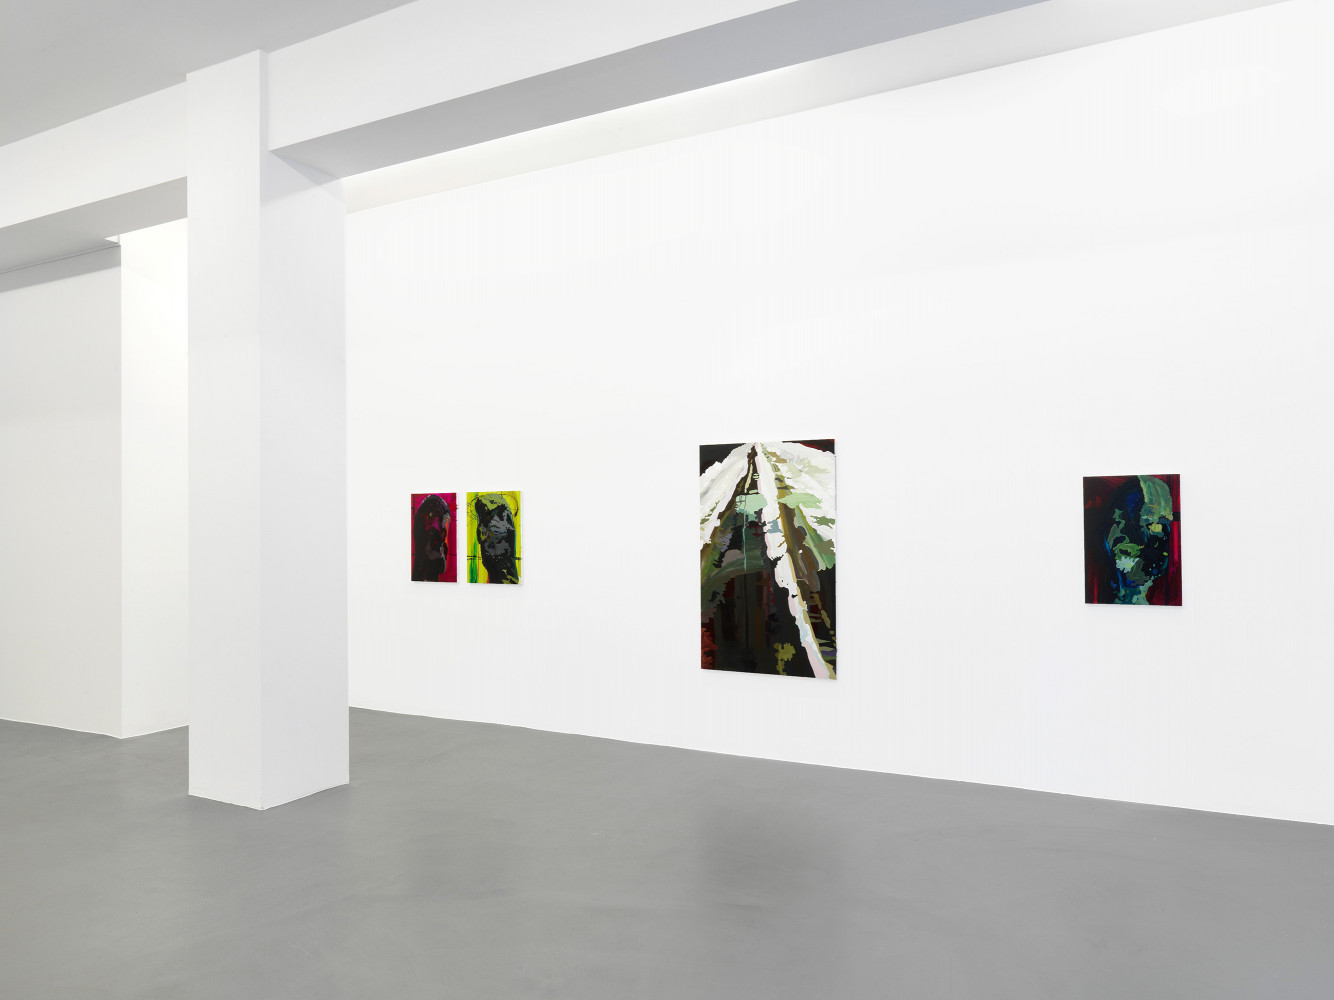 Clare Woods, Installationsansicht, Buchmann Galerie, 2012